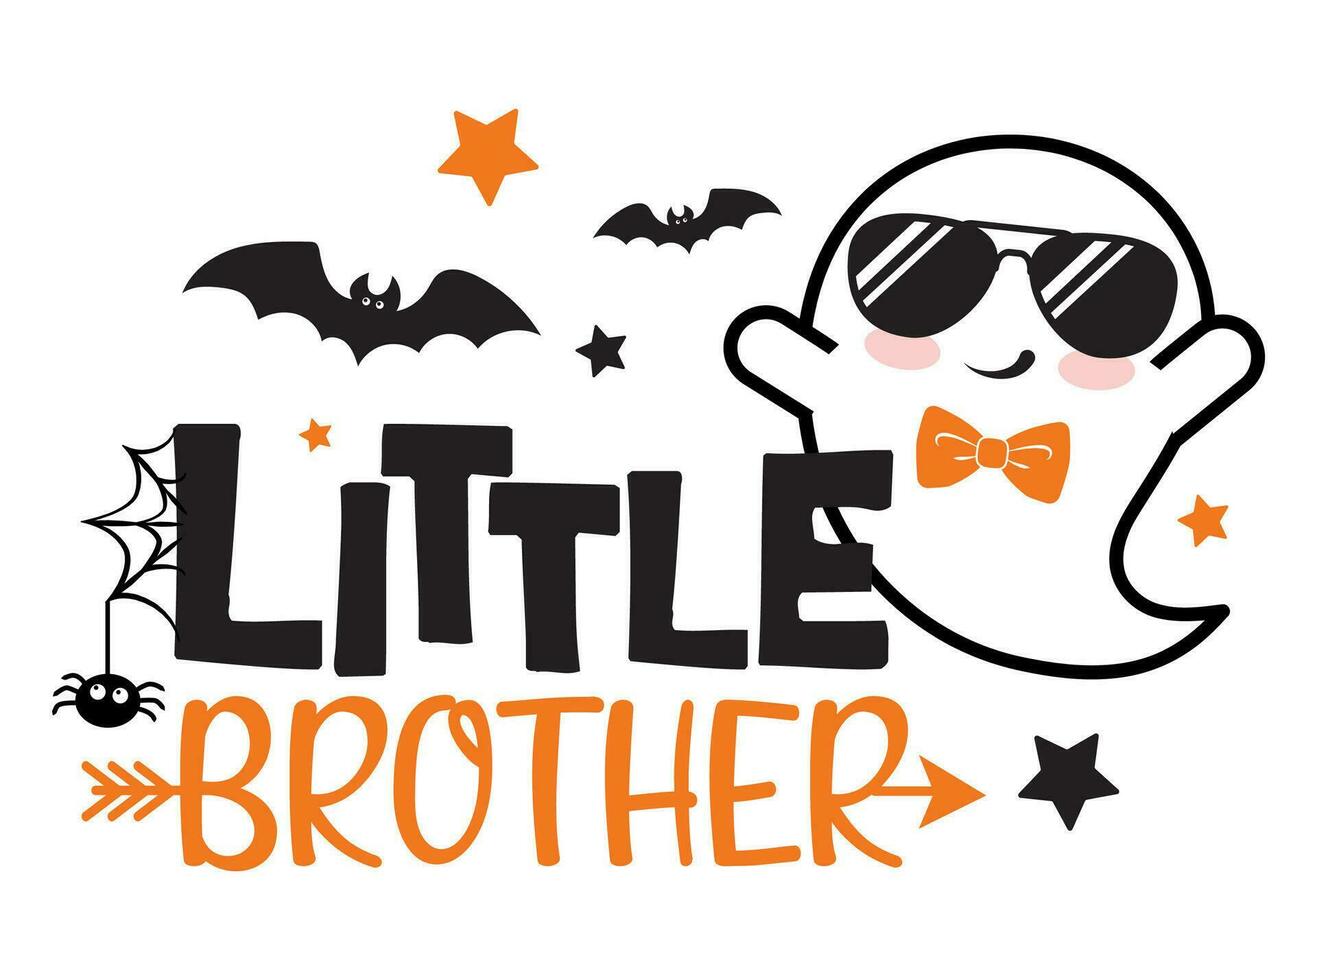 weinig broer halloween vector illustratie met koel geest, sterren, spin en vleermuizen. jongens halloween ontwerp geïsoleerd.